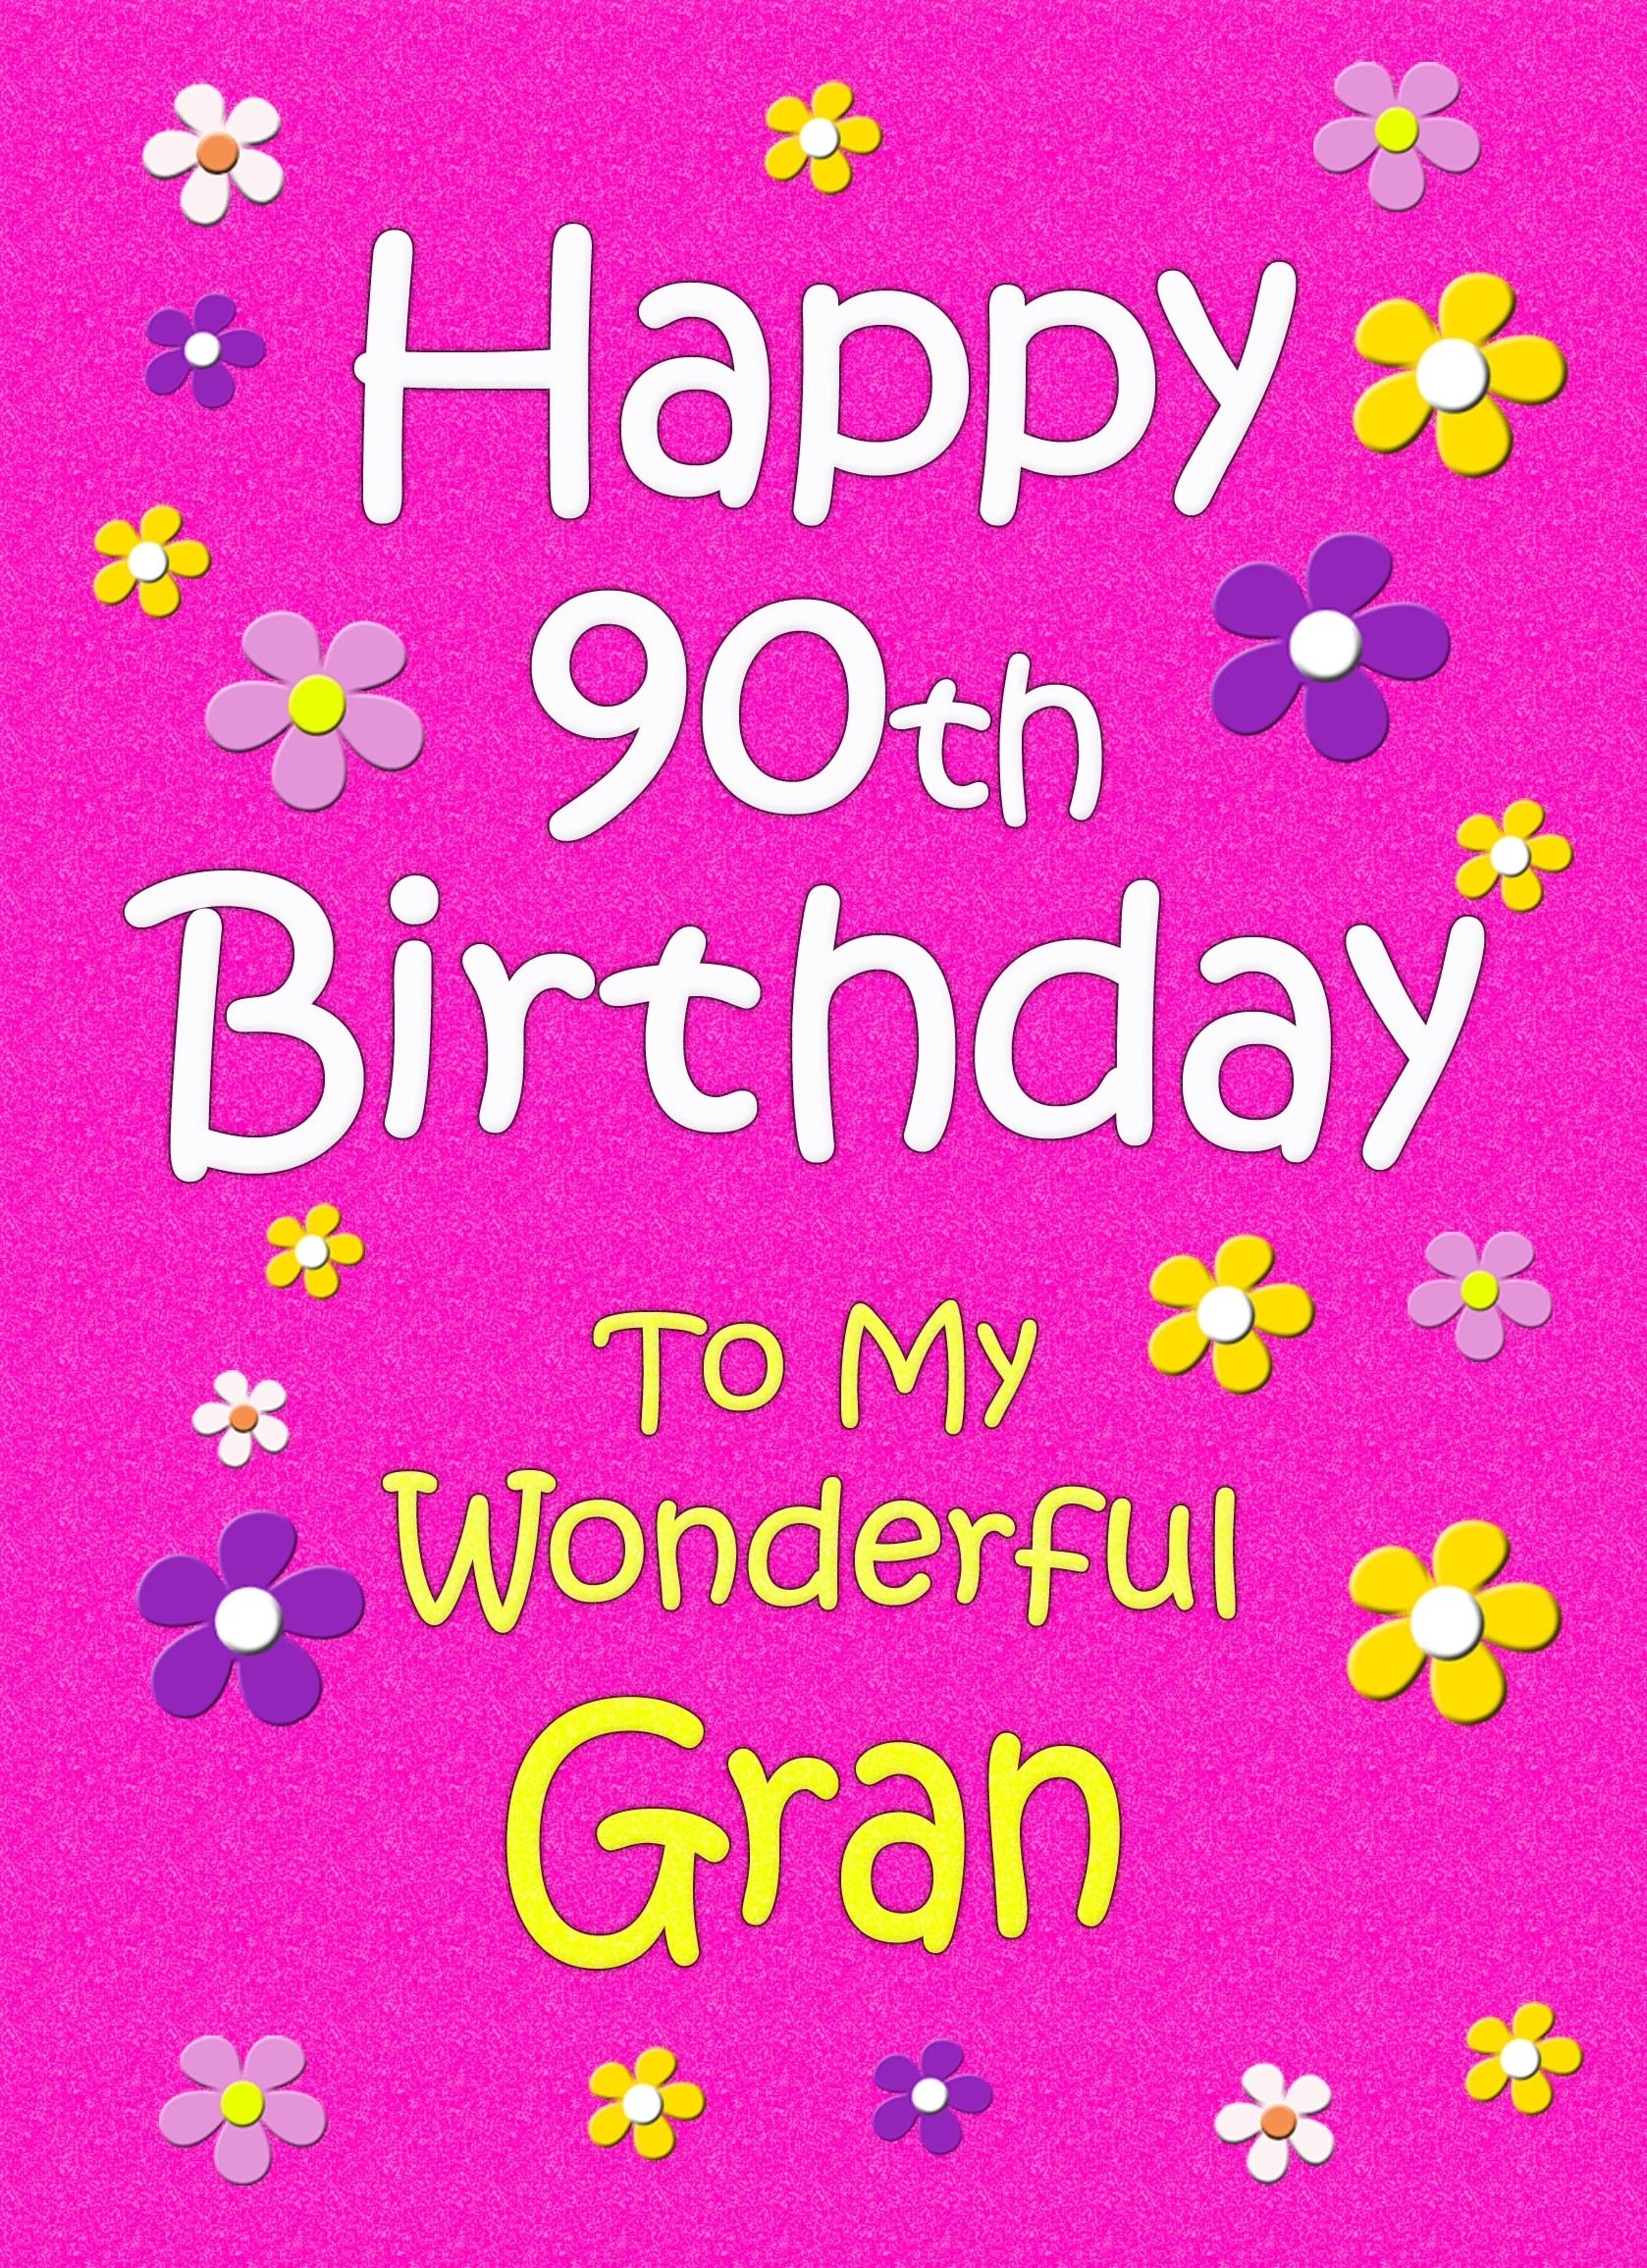 Gran 90th Birthday Card (Pink)